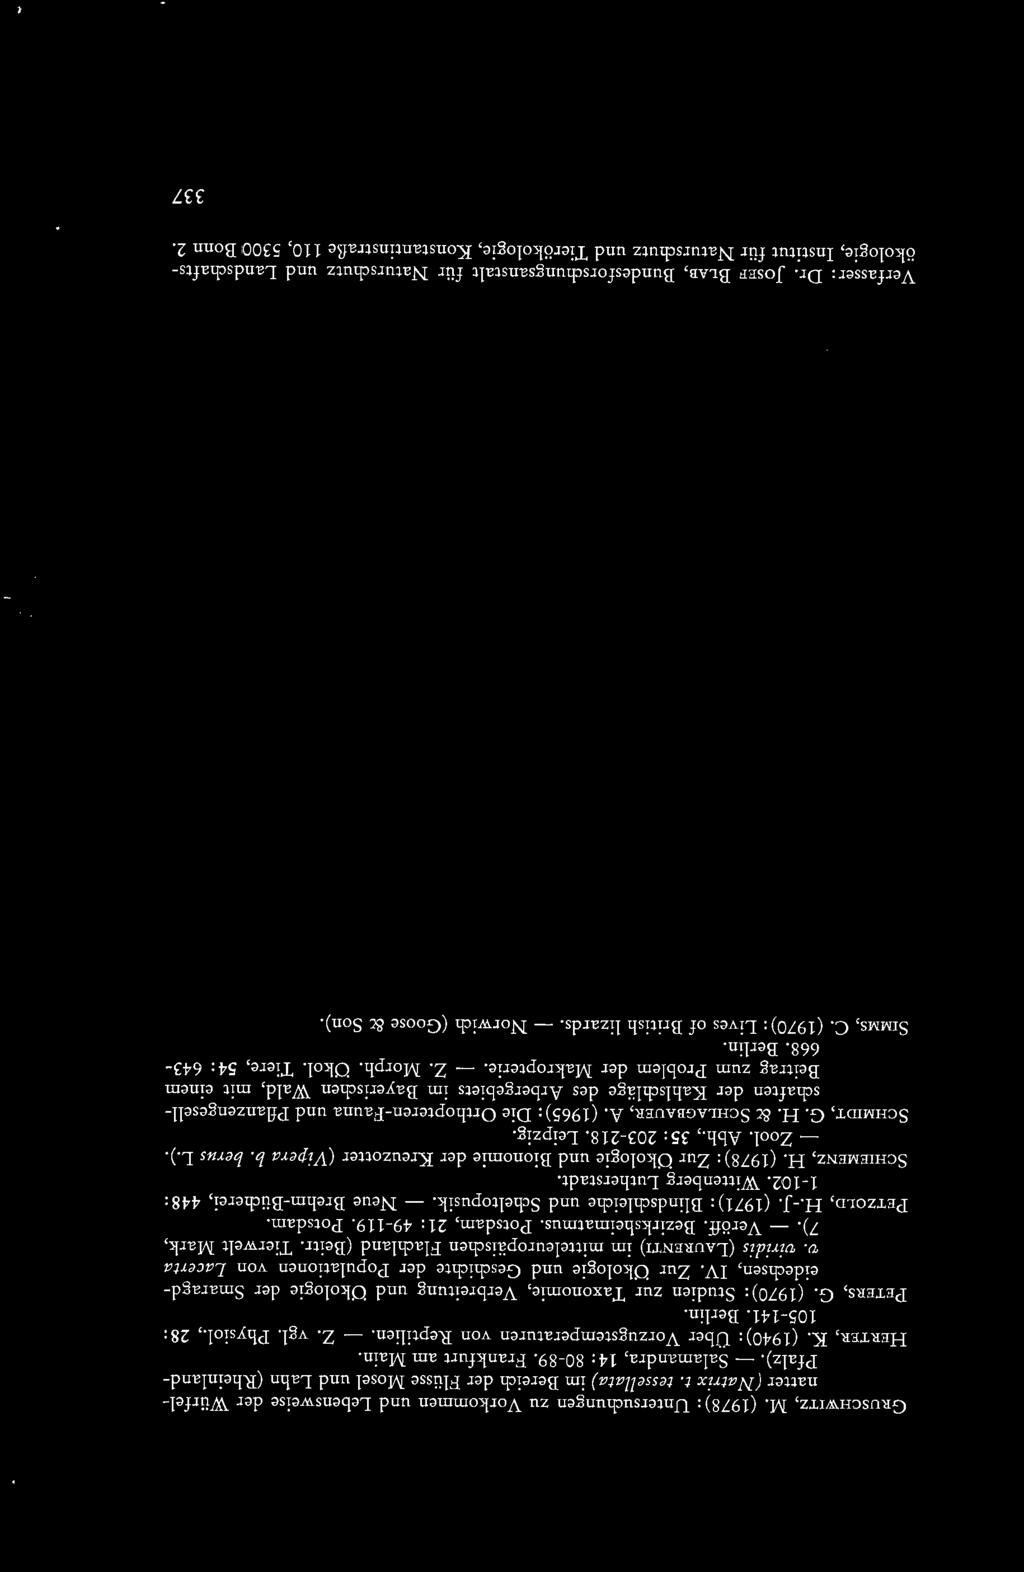 (1970): Studien zur Taxonomie, Verbreitung und t:lkologie der Smaragdeidechsen, IV. Zur 0kologie und Geschichte der Populationen von Lacerta v.